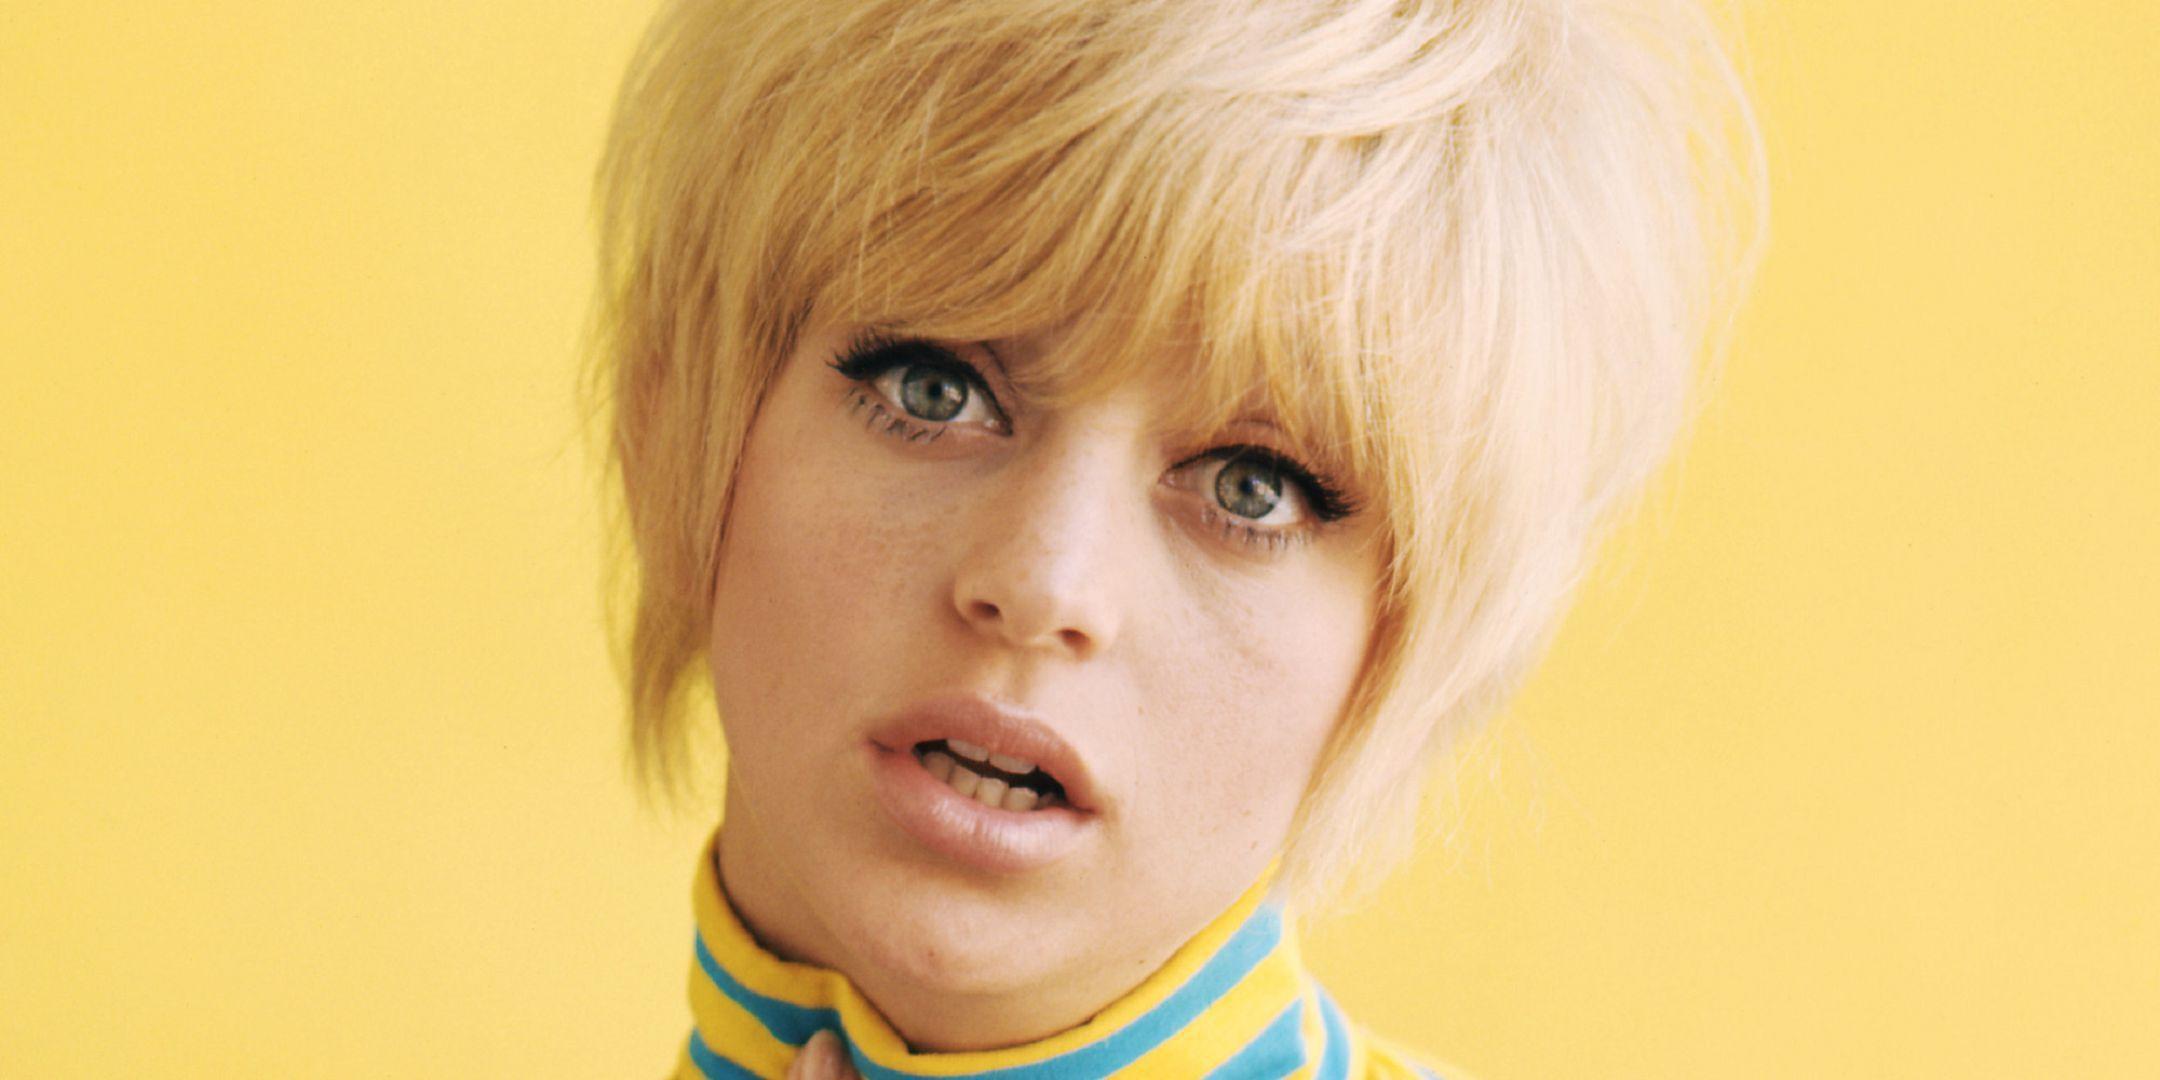 Goldie Hawn Wallpaper Background